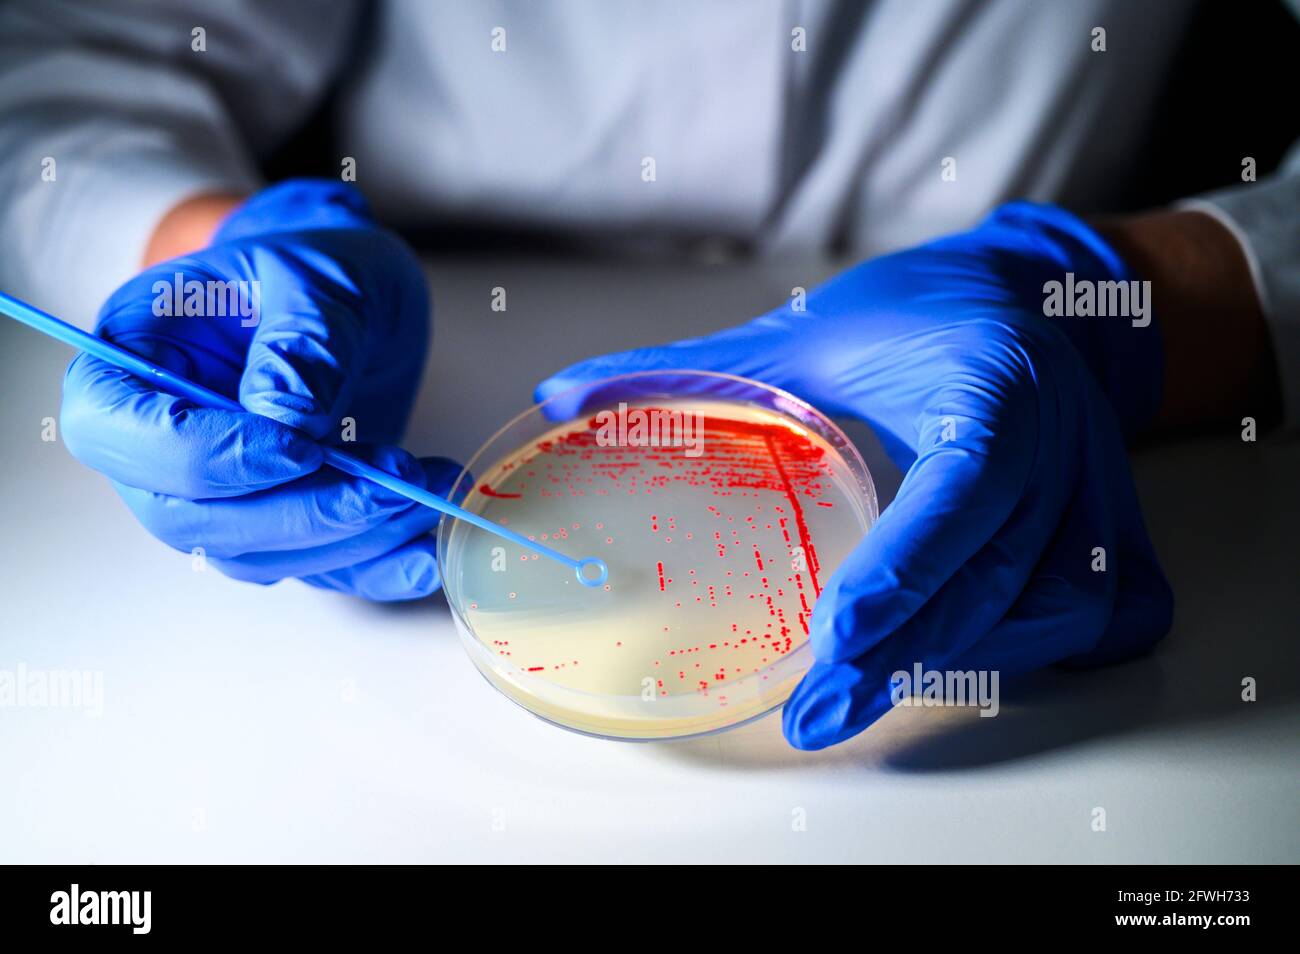 Reasercher nimmt Kolonie einer roten Bakterienkultur ab Agar-Platte mit blauen Handschuhen in einem molekularbiologischen Labor Für die Isolation von dru Stockfoto